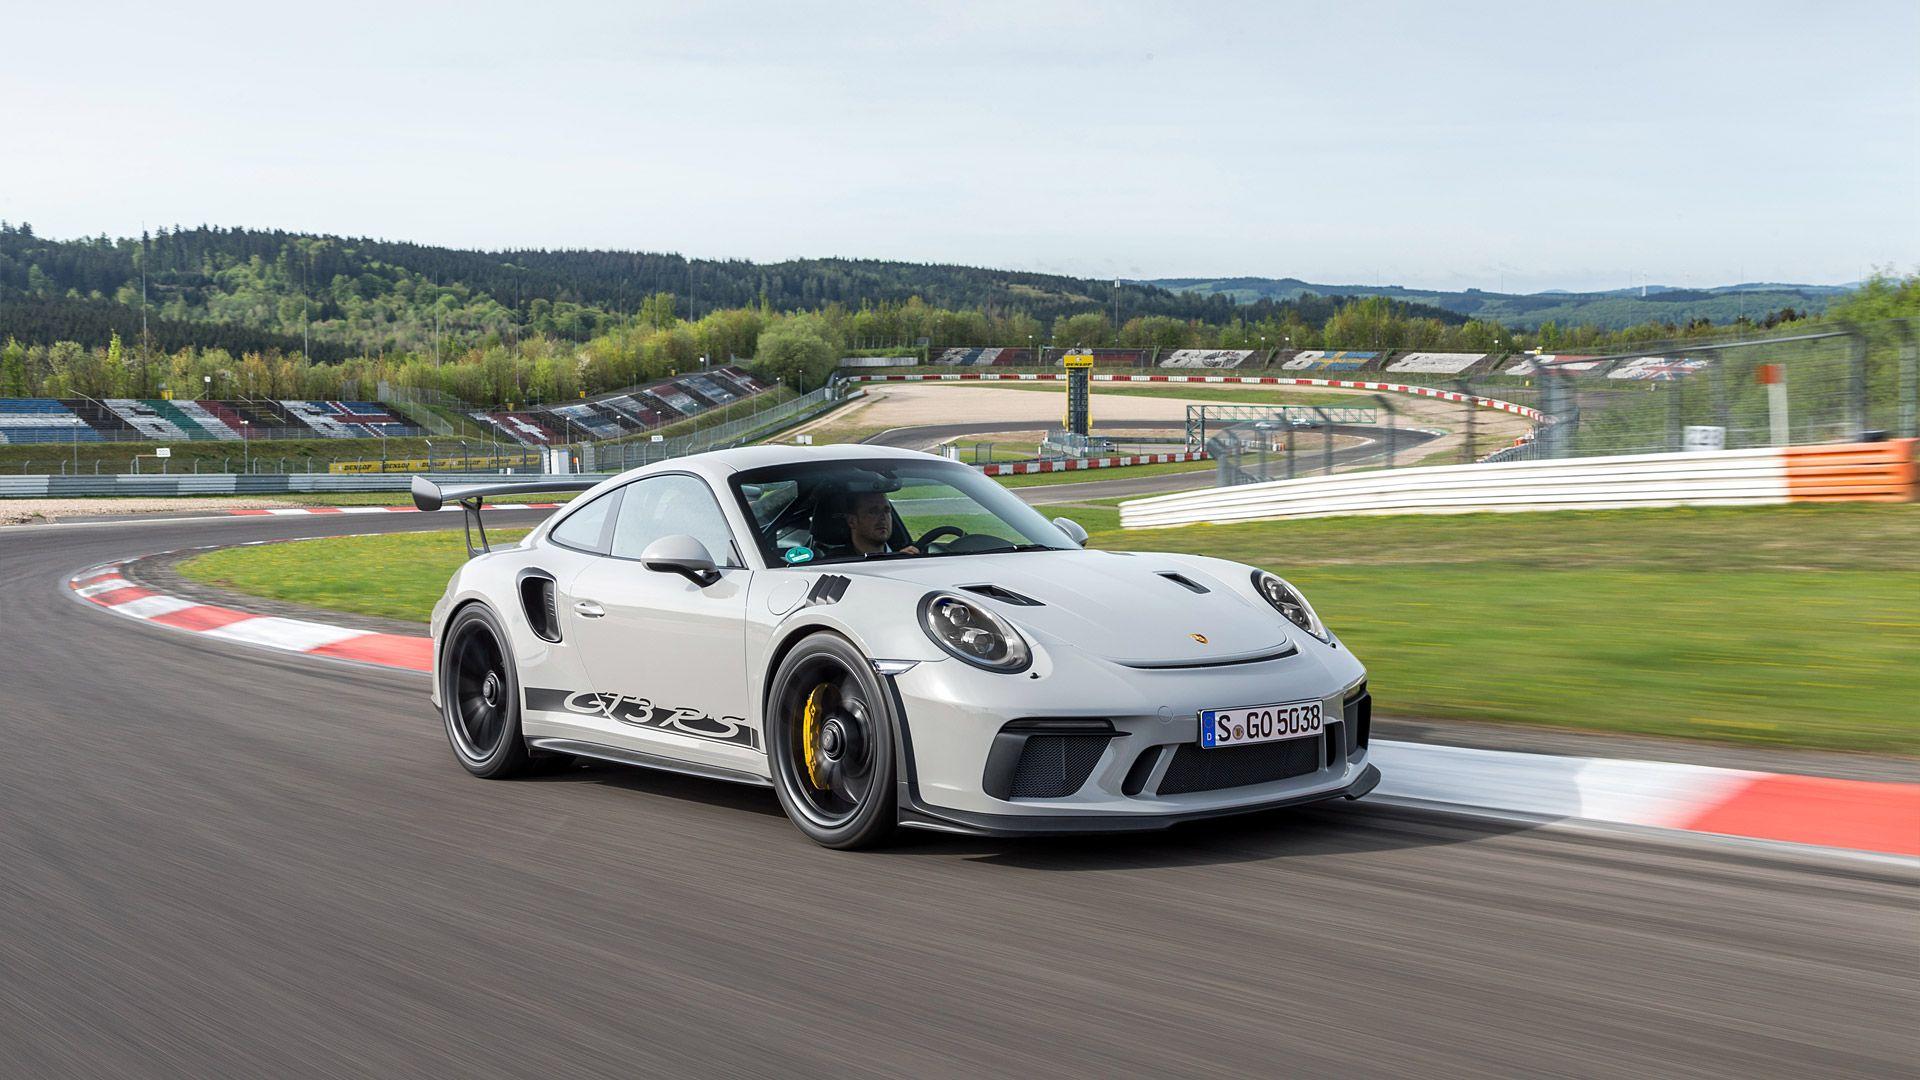 Porsche Gt3 Rs Wallpapers Top Free Porsche Gt3 Rs Backgrounds Wallpaperaccess